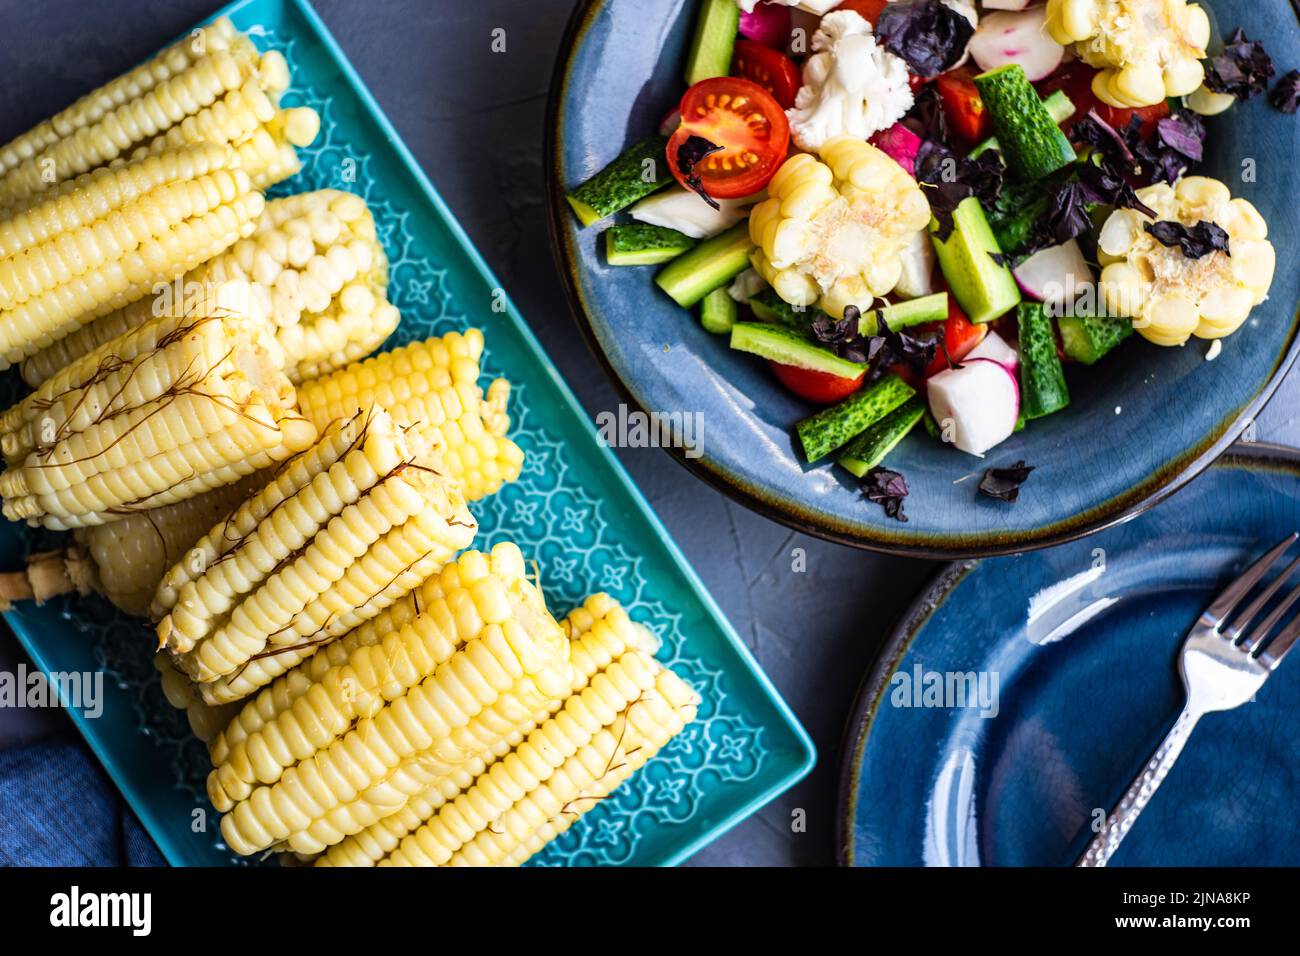 Ensalada de verduras saludables con maíz hervido servido en el cuenco azul profundo Foto de stock